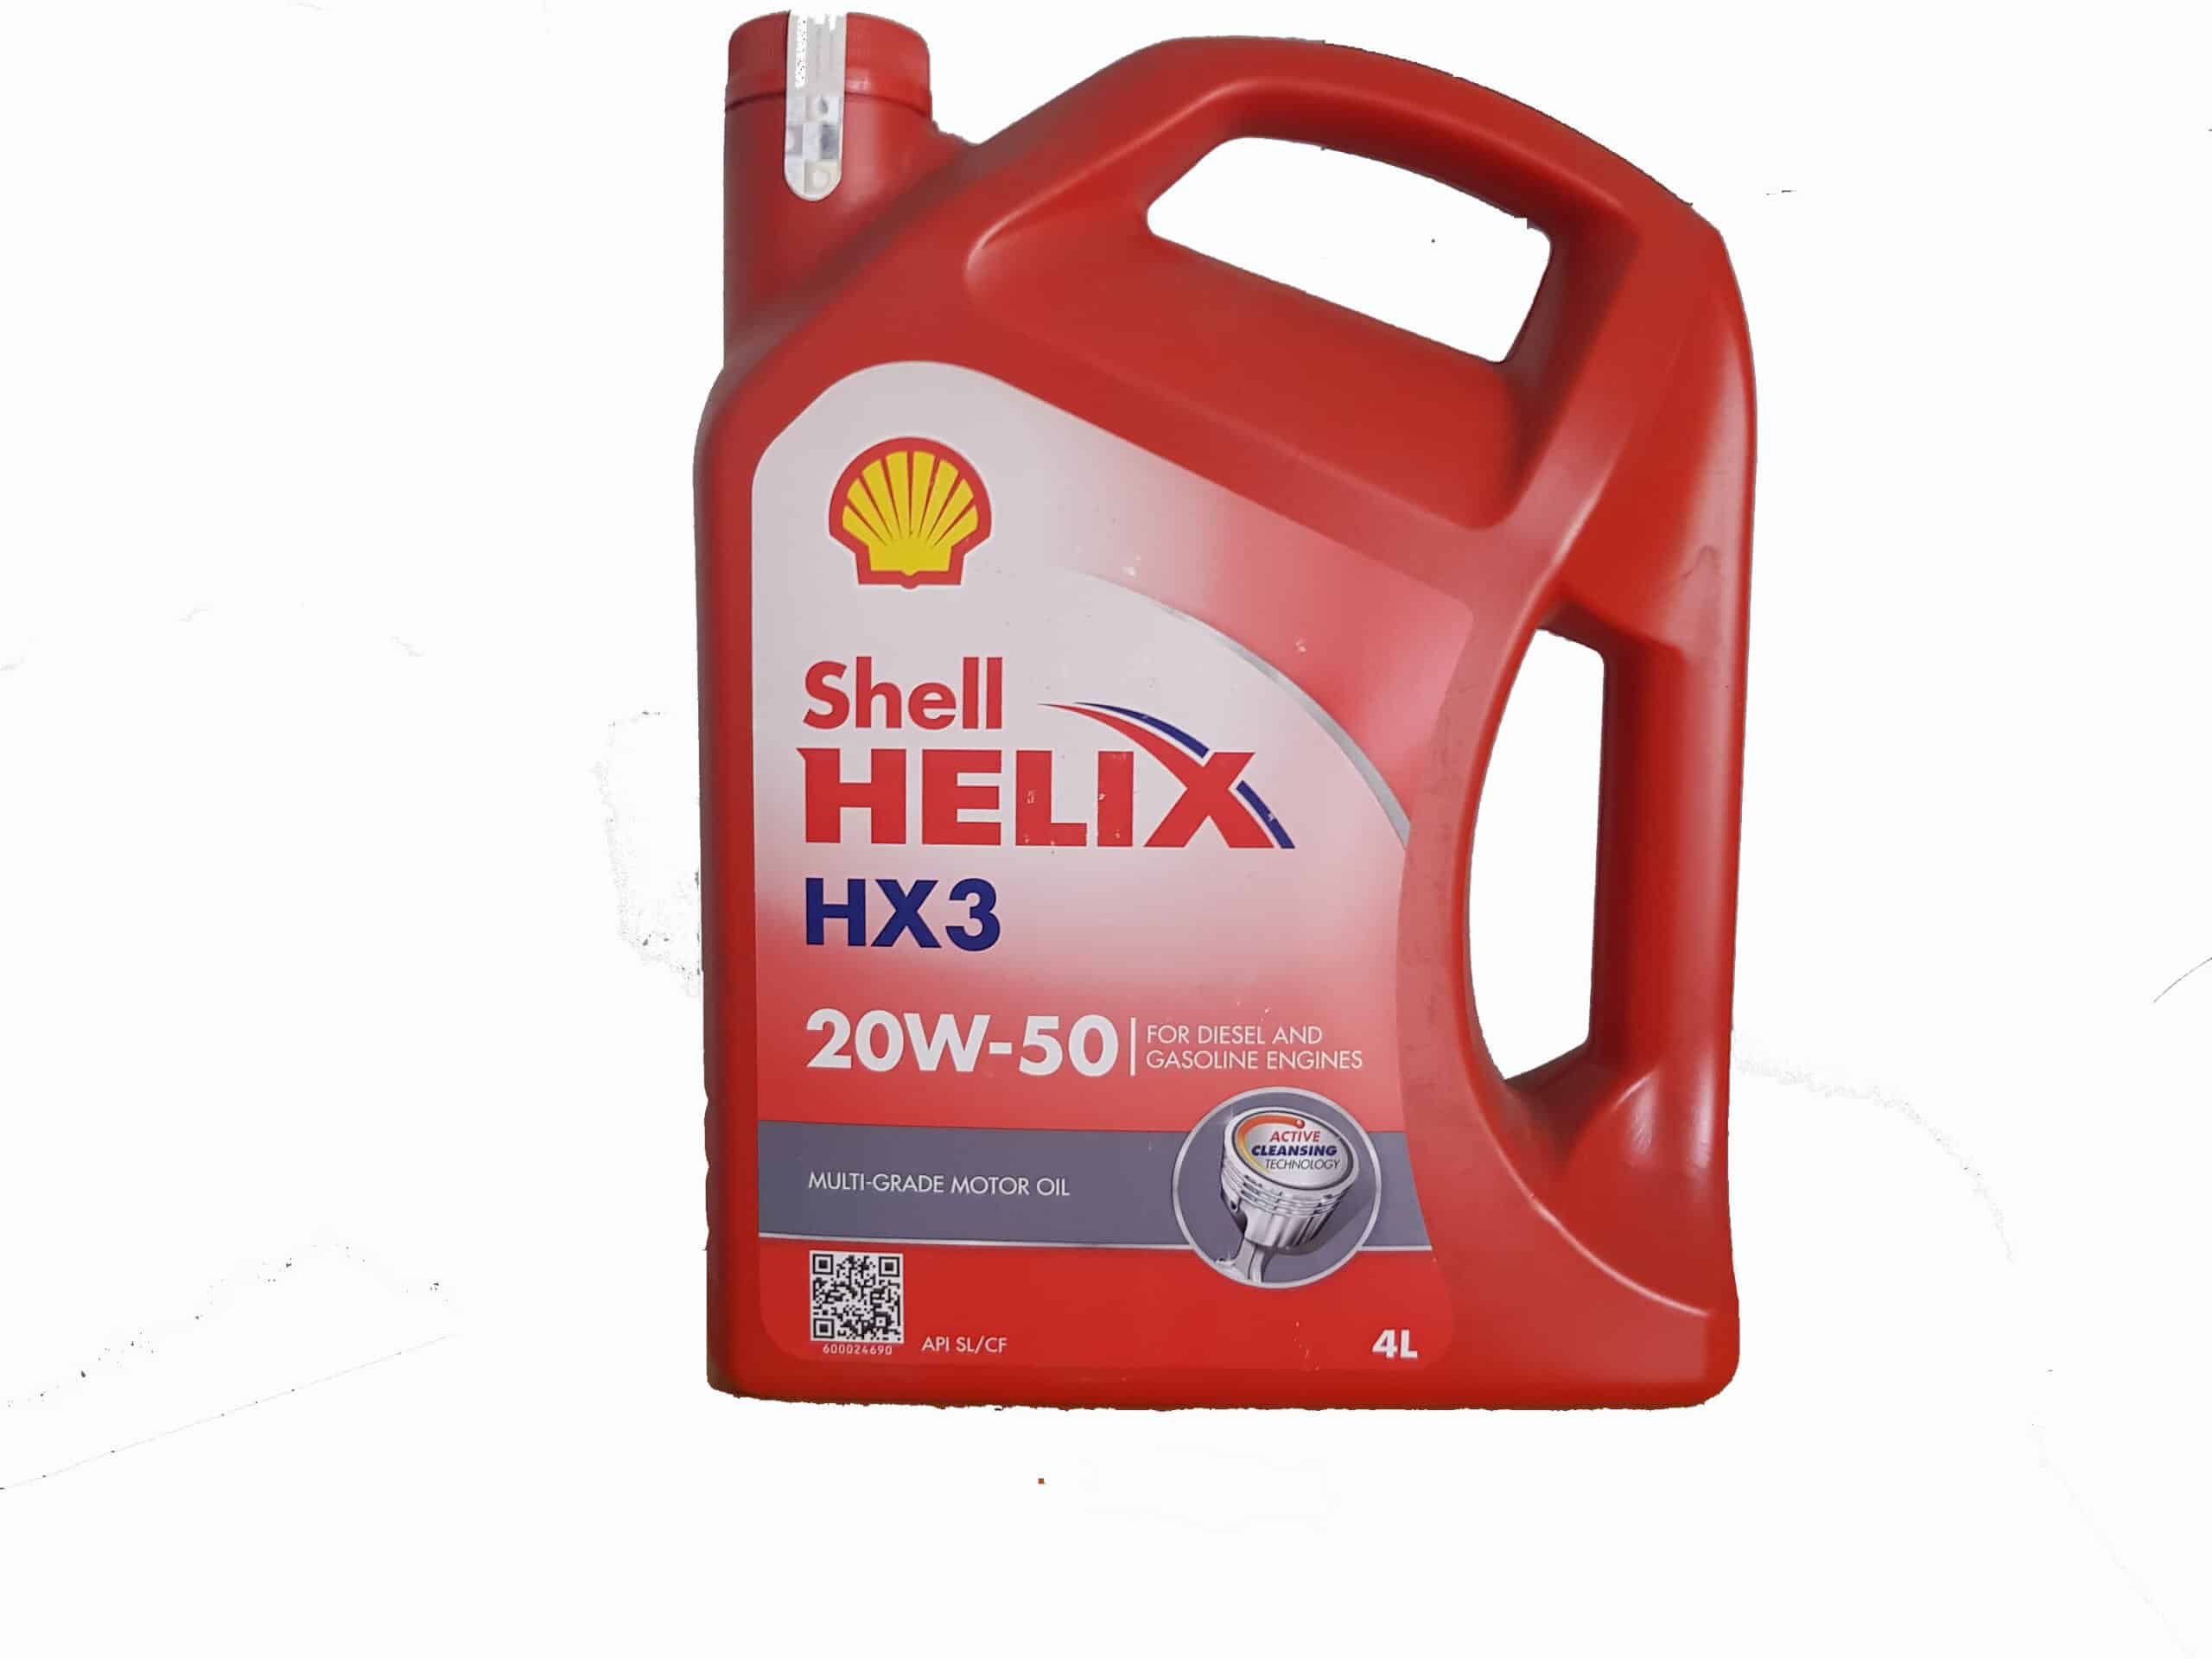 Shell-Helix-HX3-20W-50